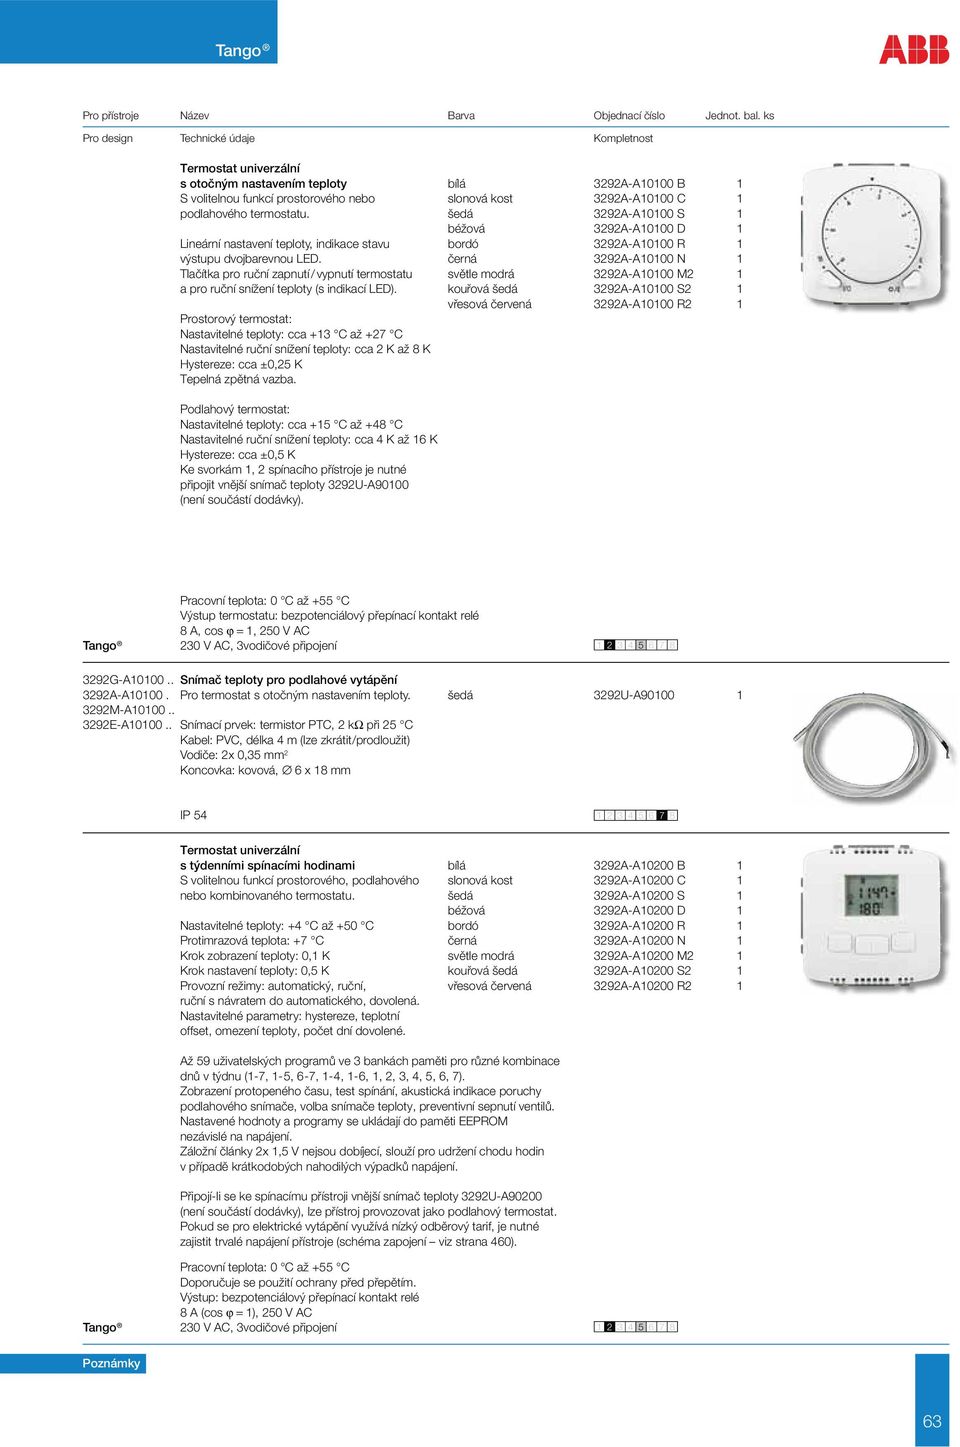 černá 3292A-A10100 N 1 Tlačítka pro ruční zapnutí / vypnutí termostatu světle modrá 3292A-A10100 M2 1 a pro ruční snížení teploty (s indikací LED).